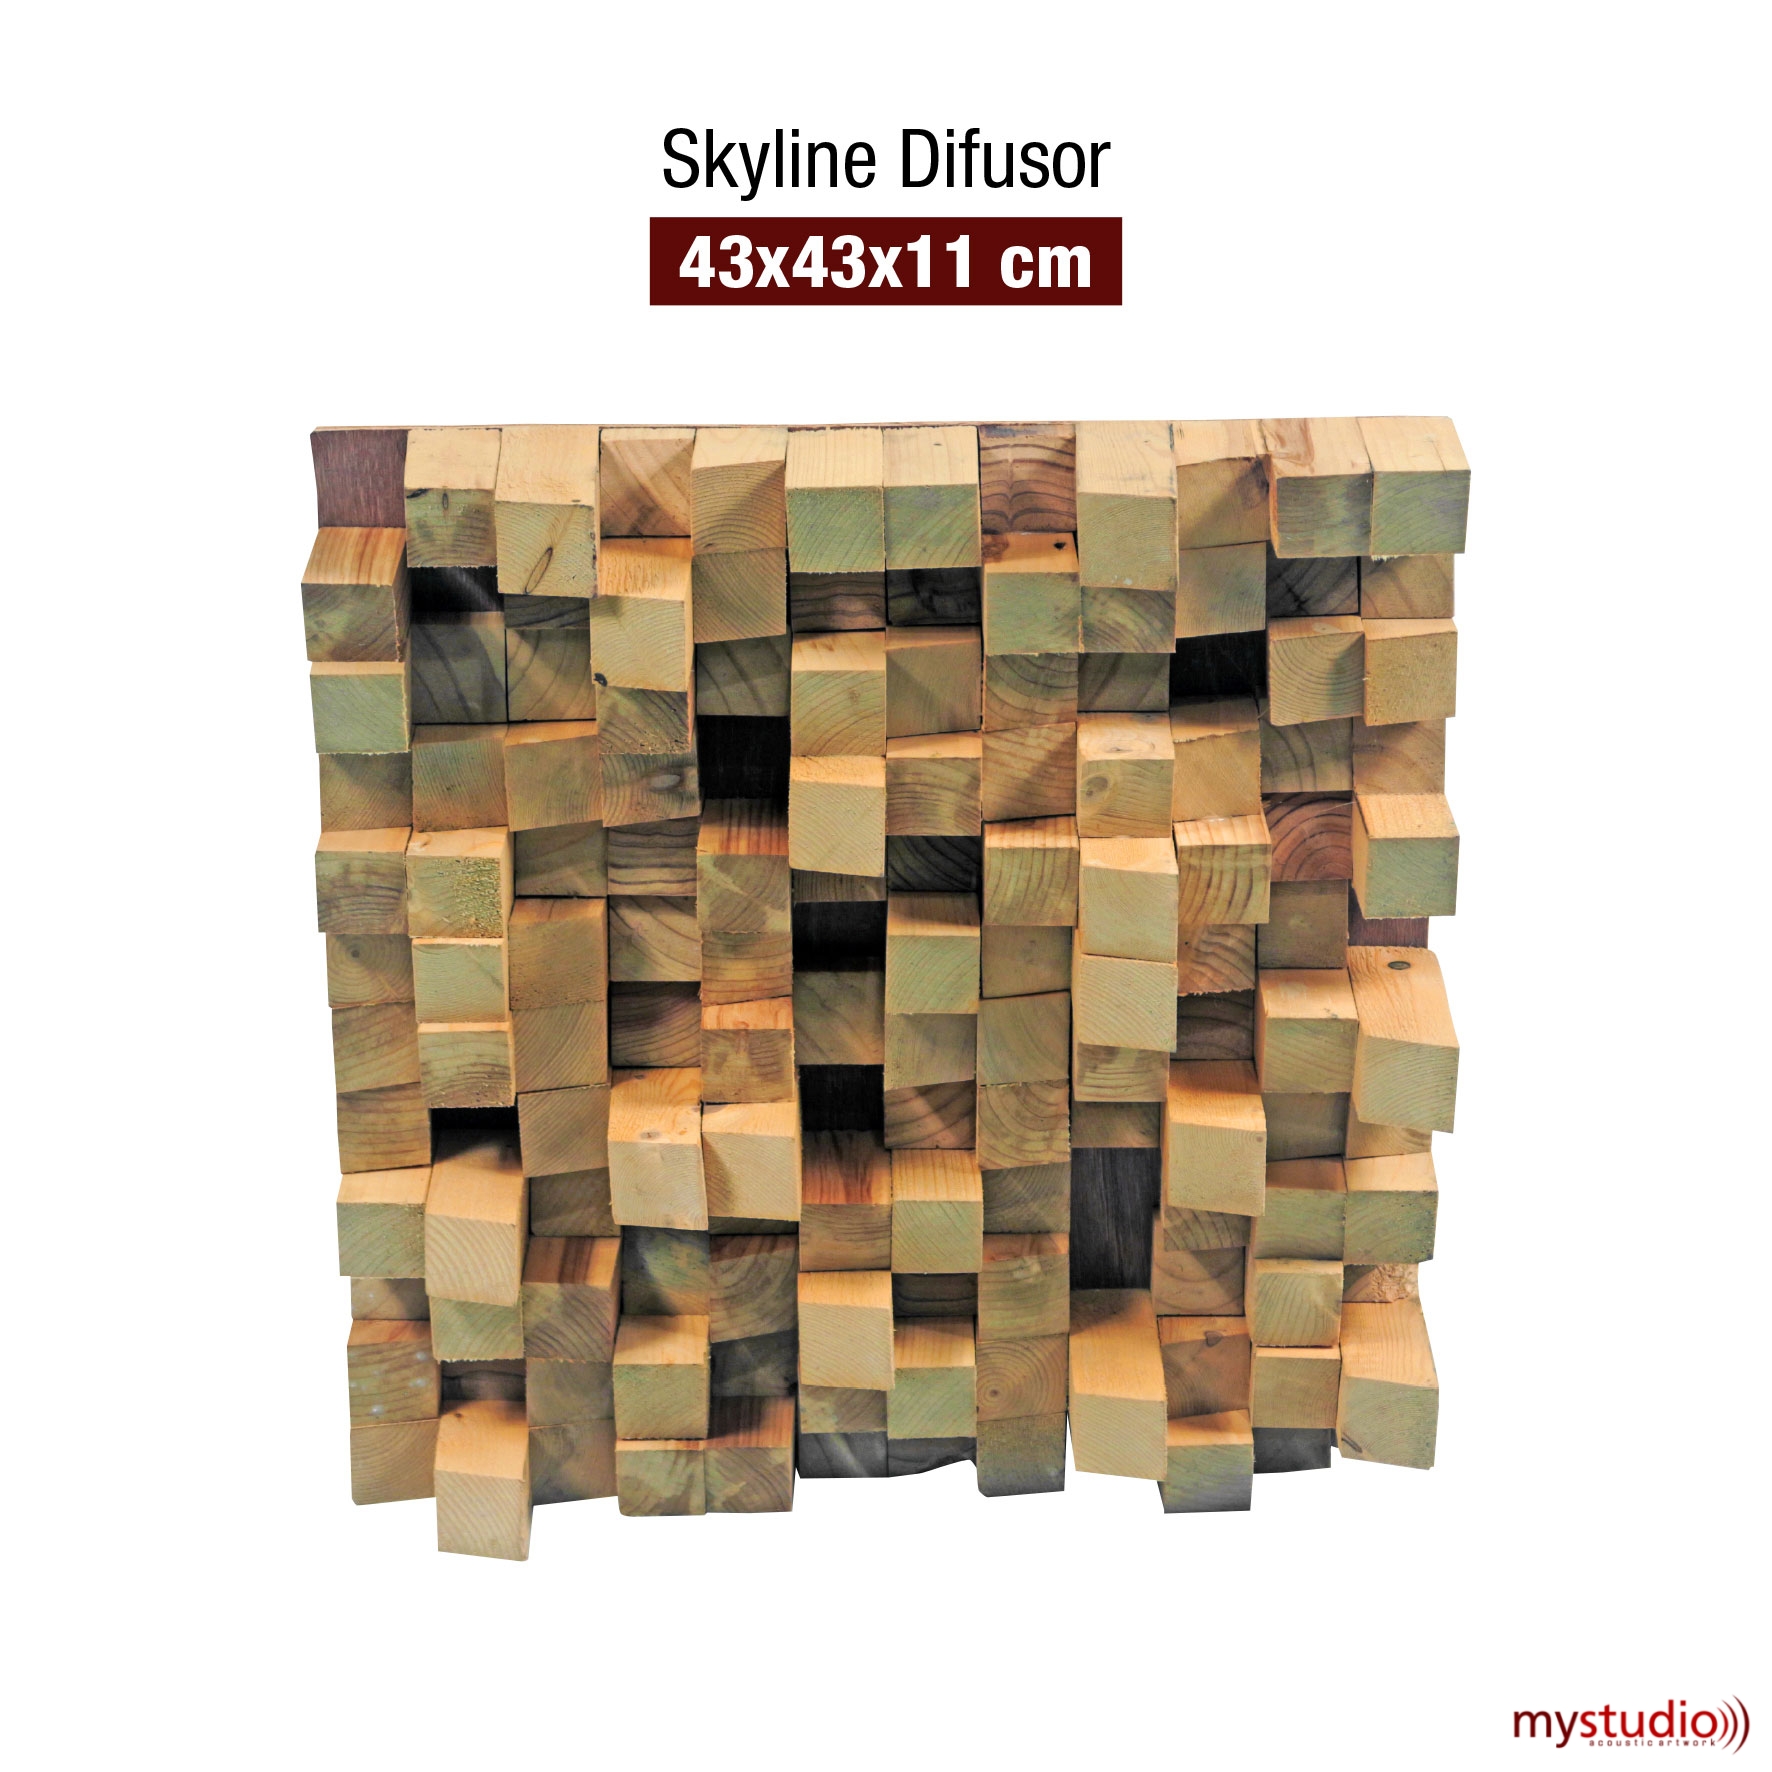 Skyline Difuser - Produk Mystudio